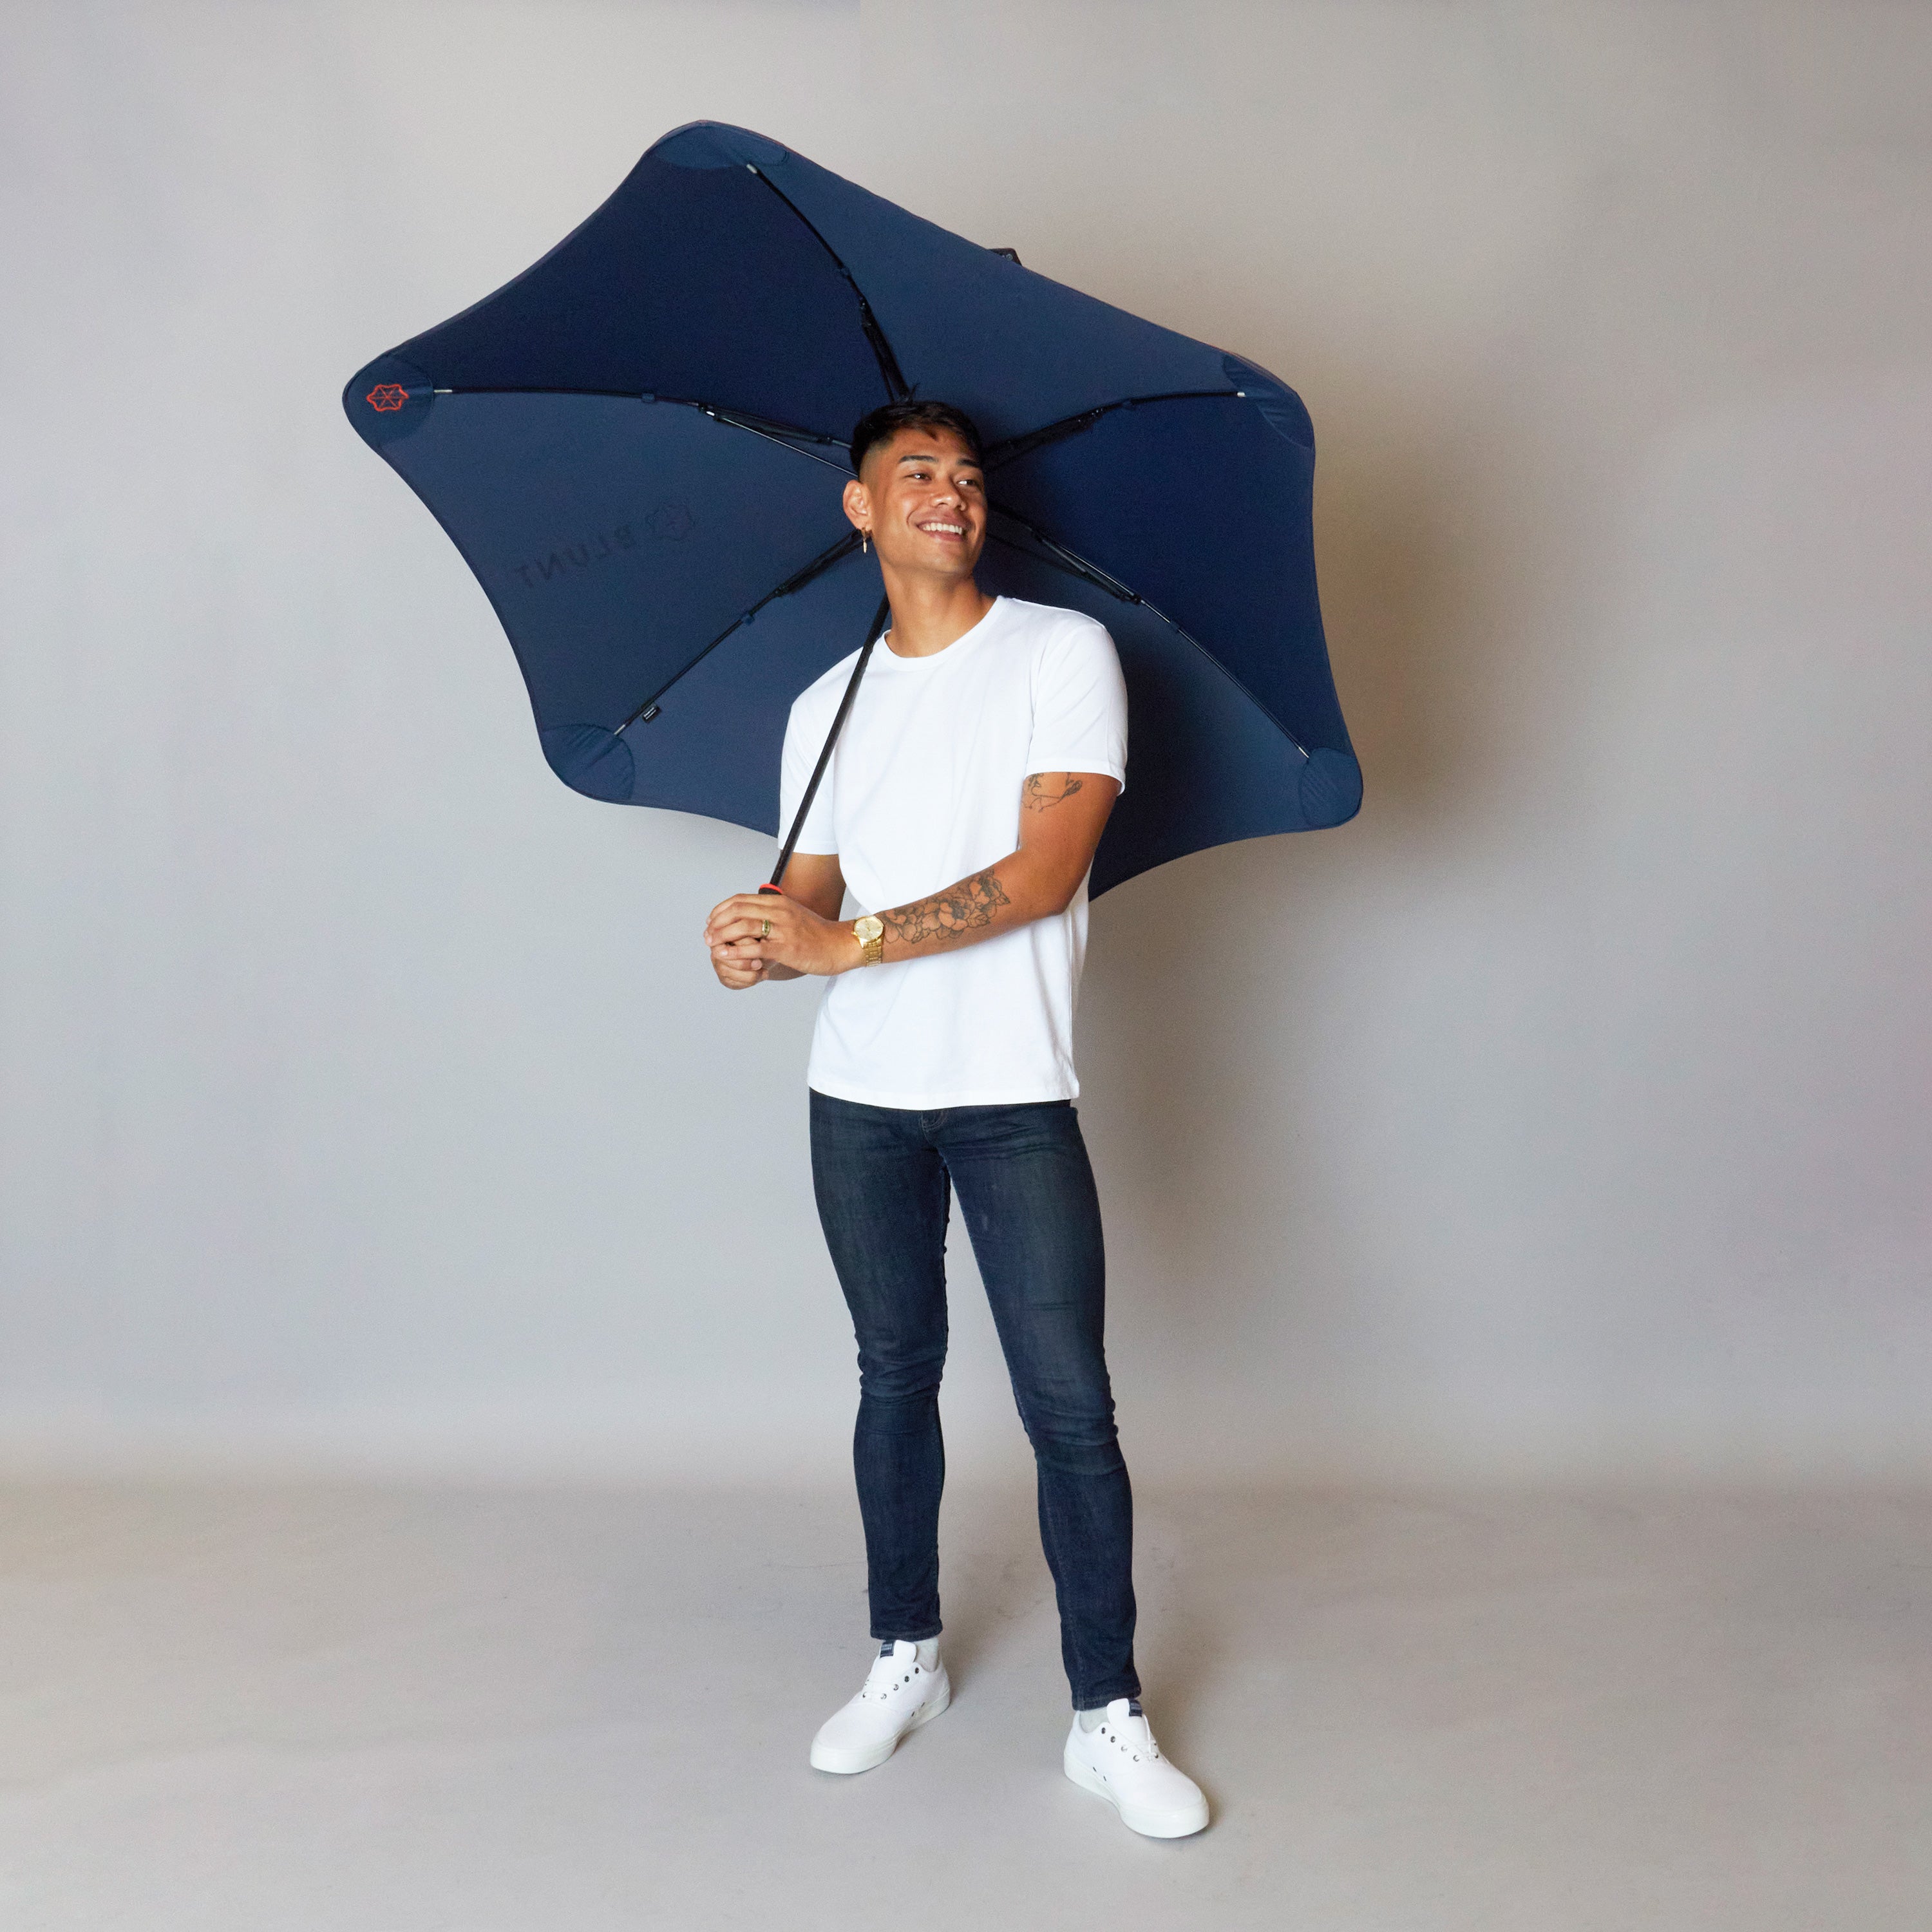 2020 Navy/Orange Sport Blunt Umbrella Model Front View